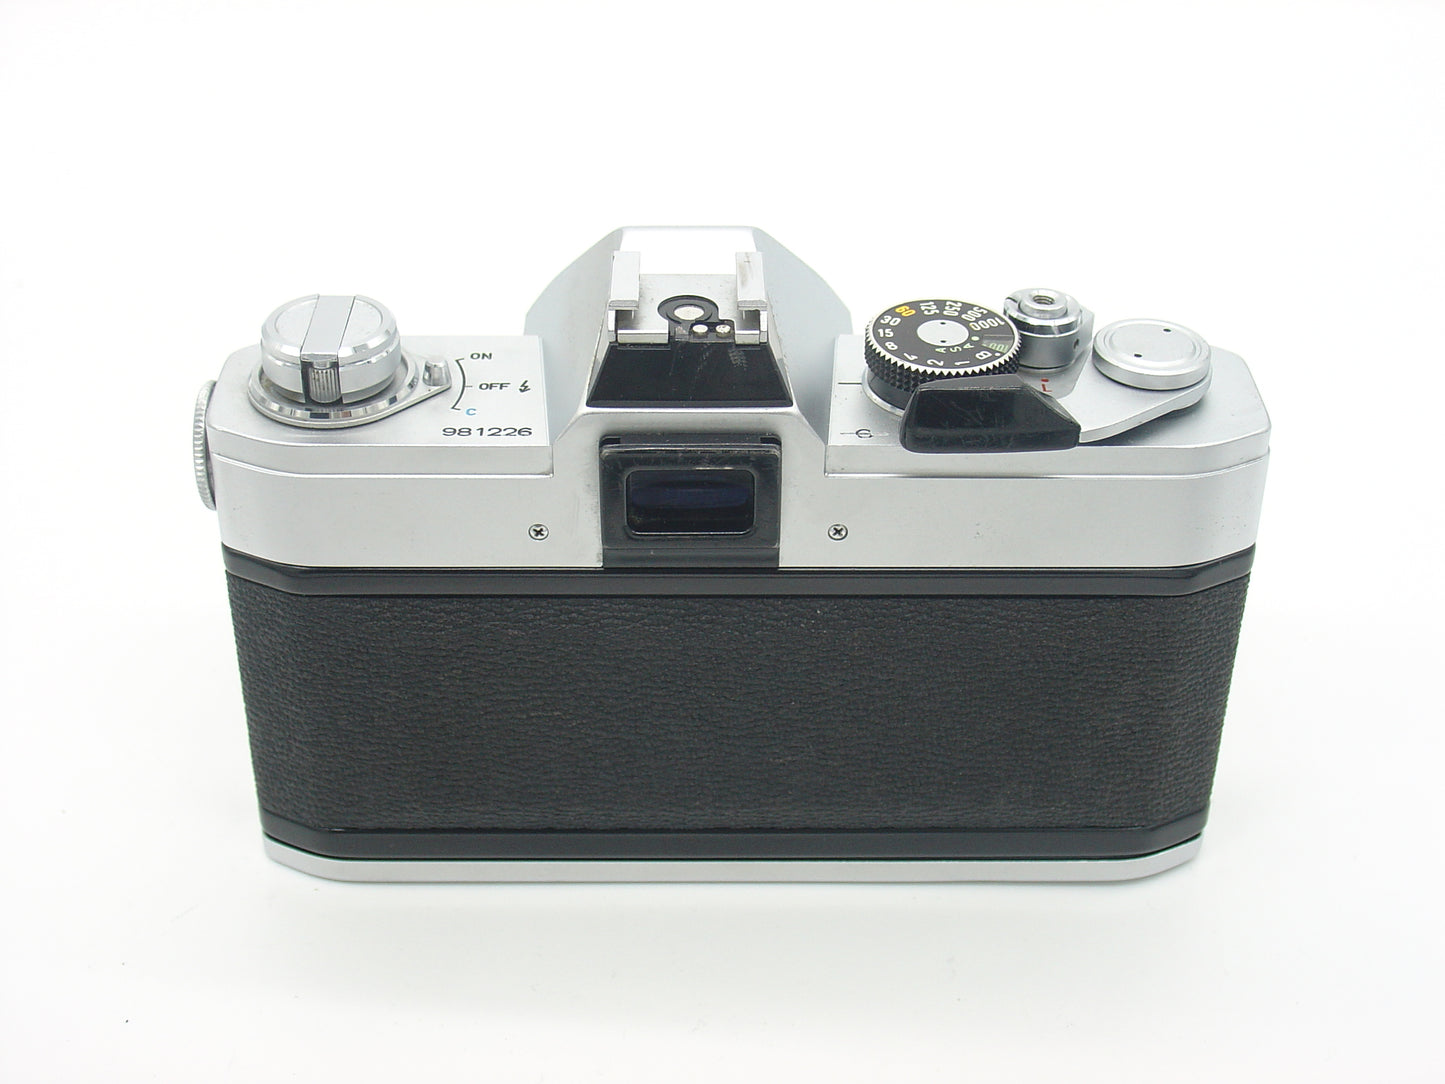 Canon FTb SLR film camera